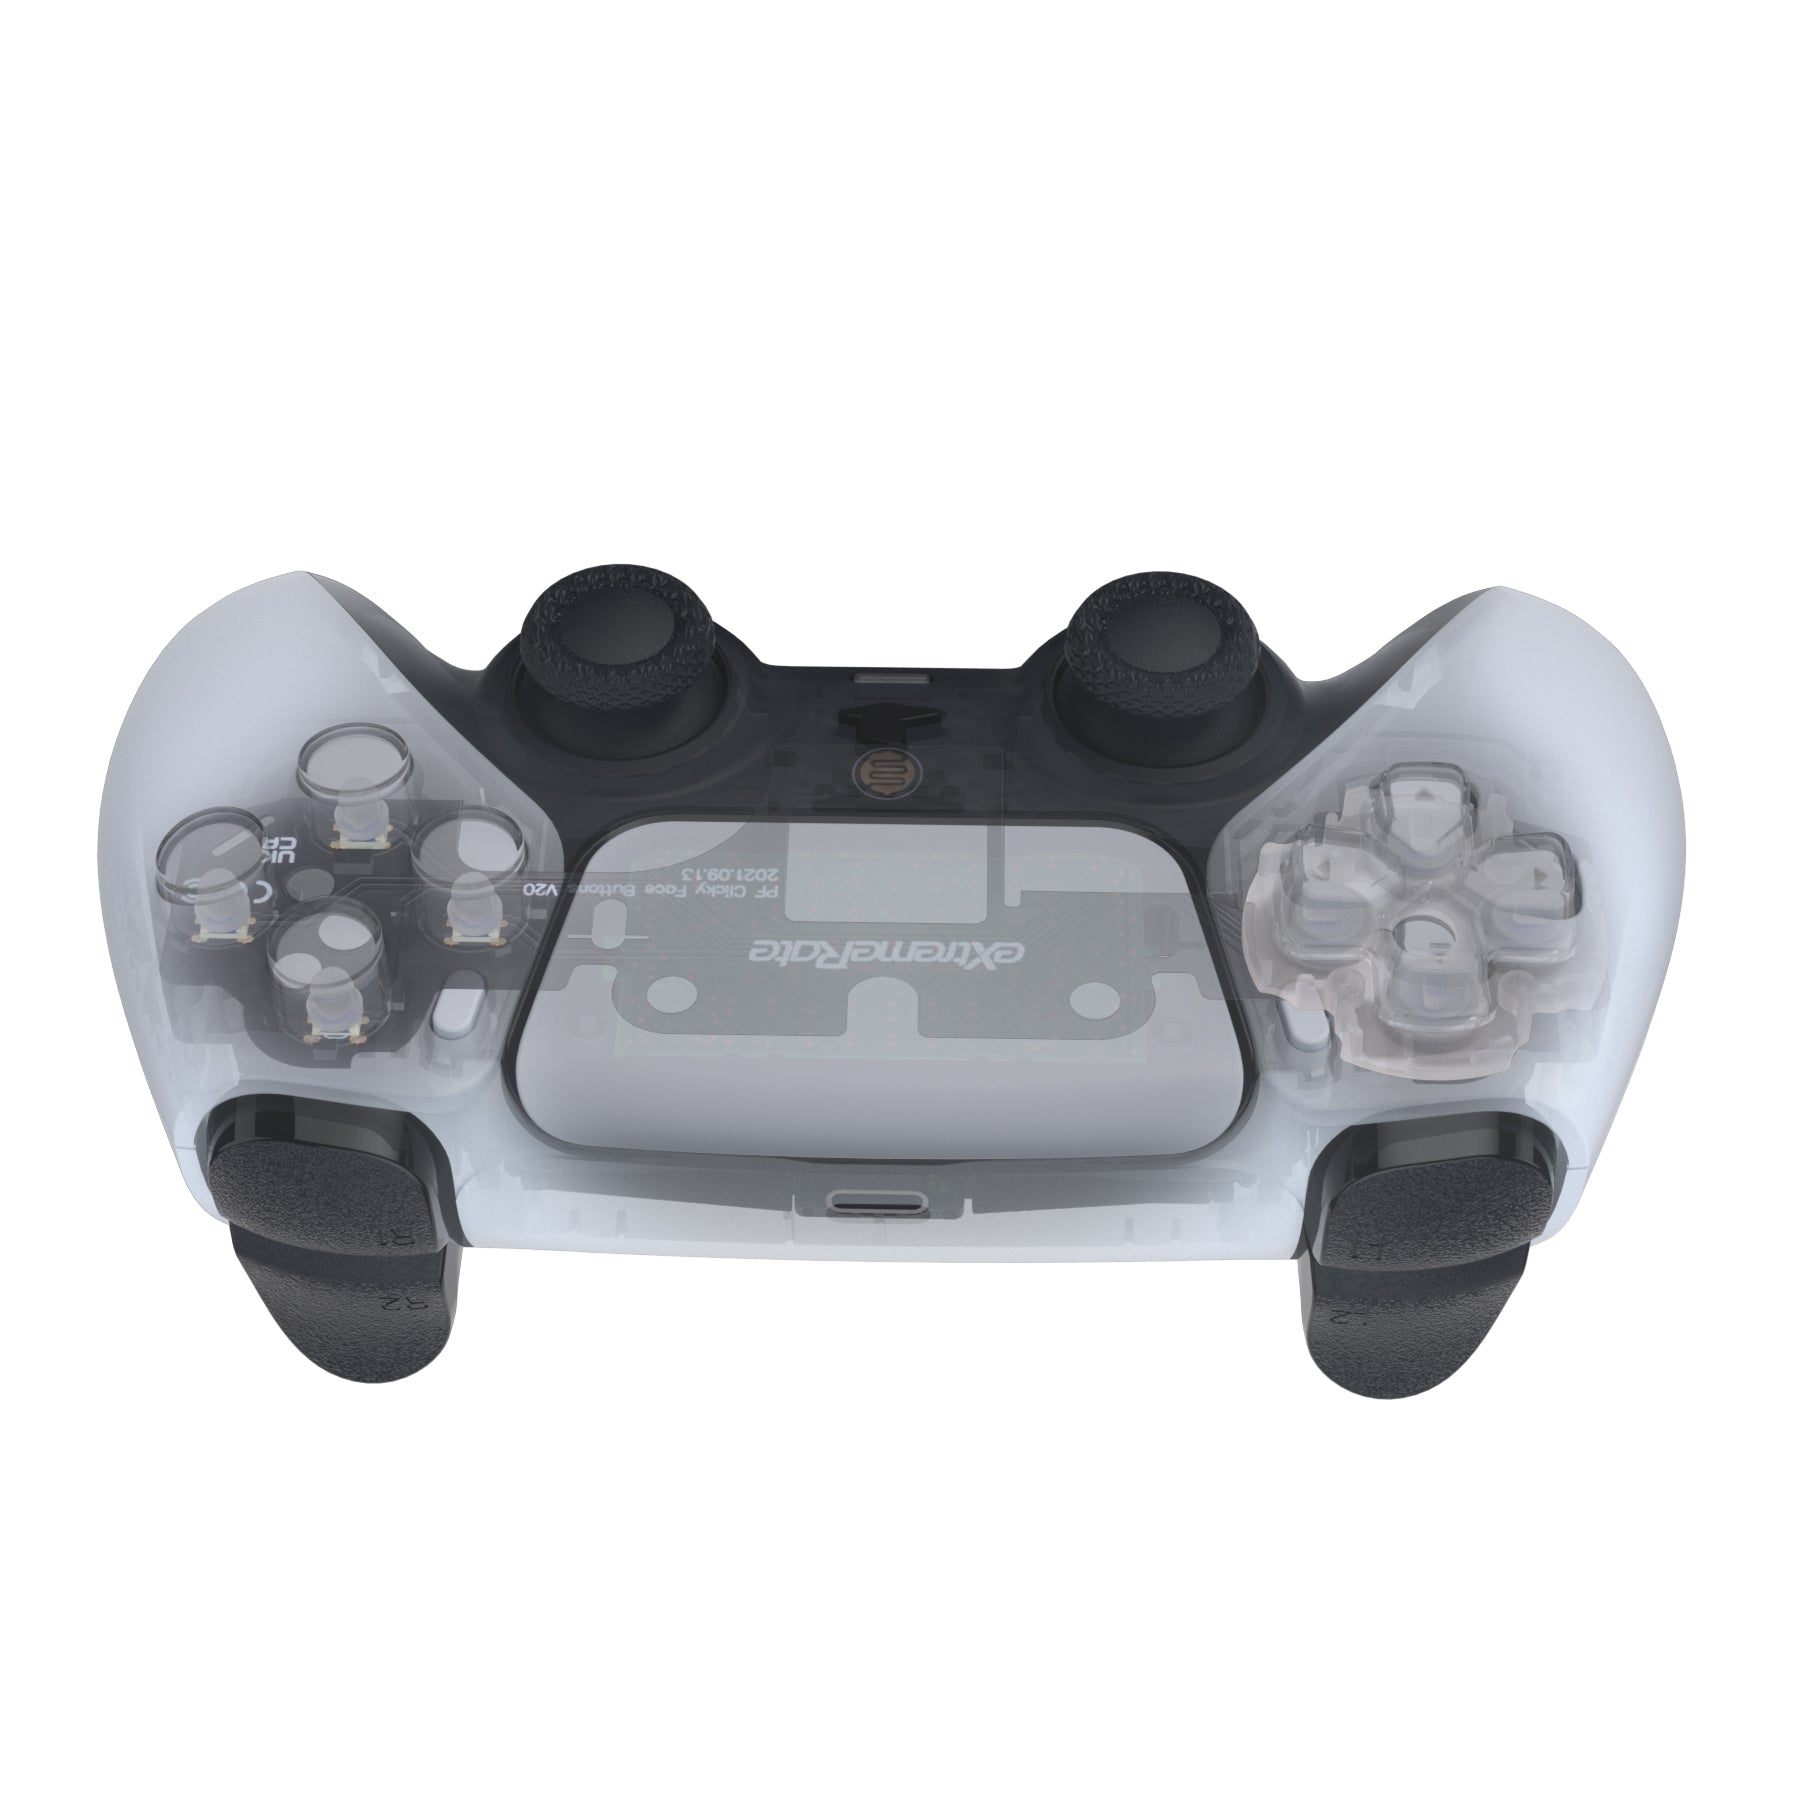 PS5 Slim Console w/DualSense Controller, Accessories & Combo Voucher -  22472689